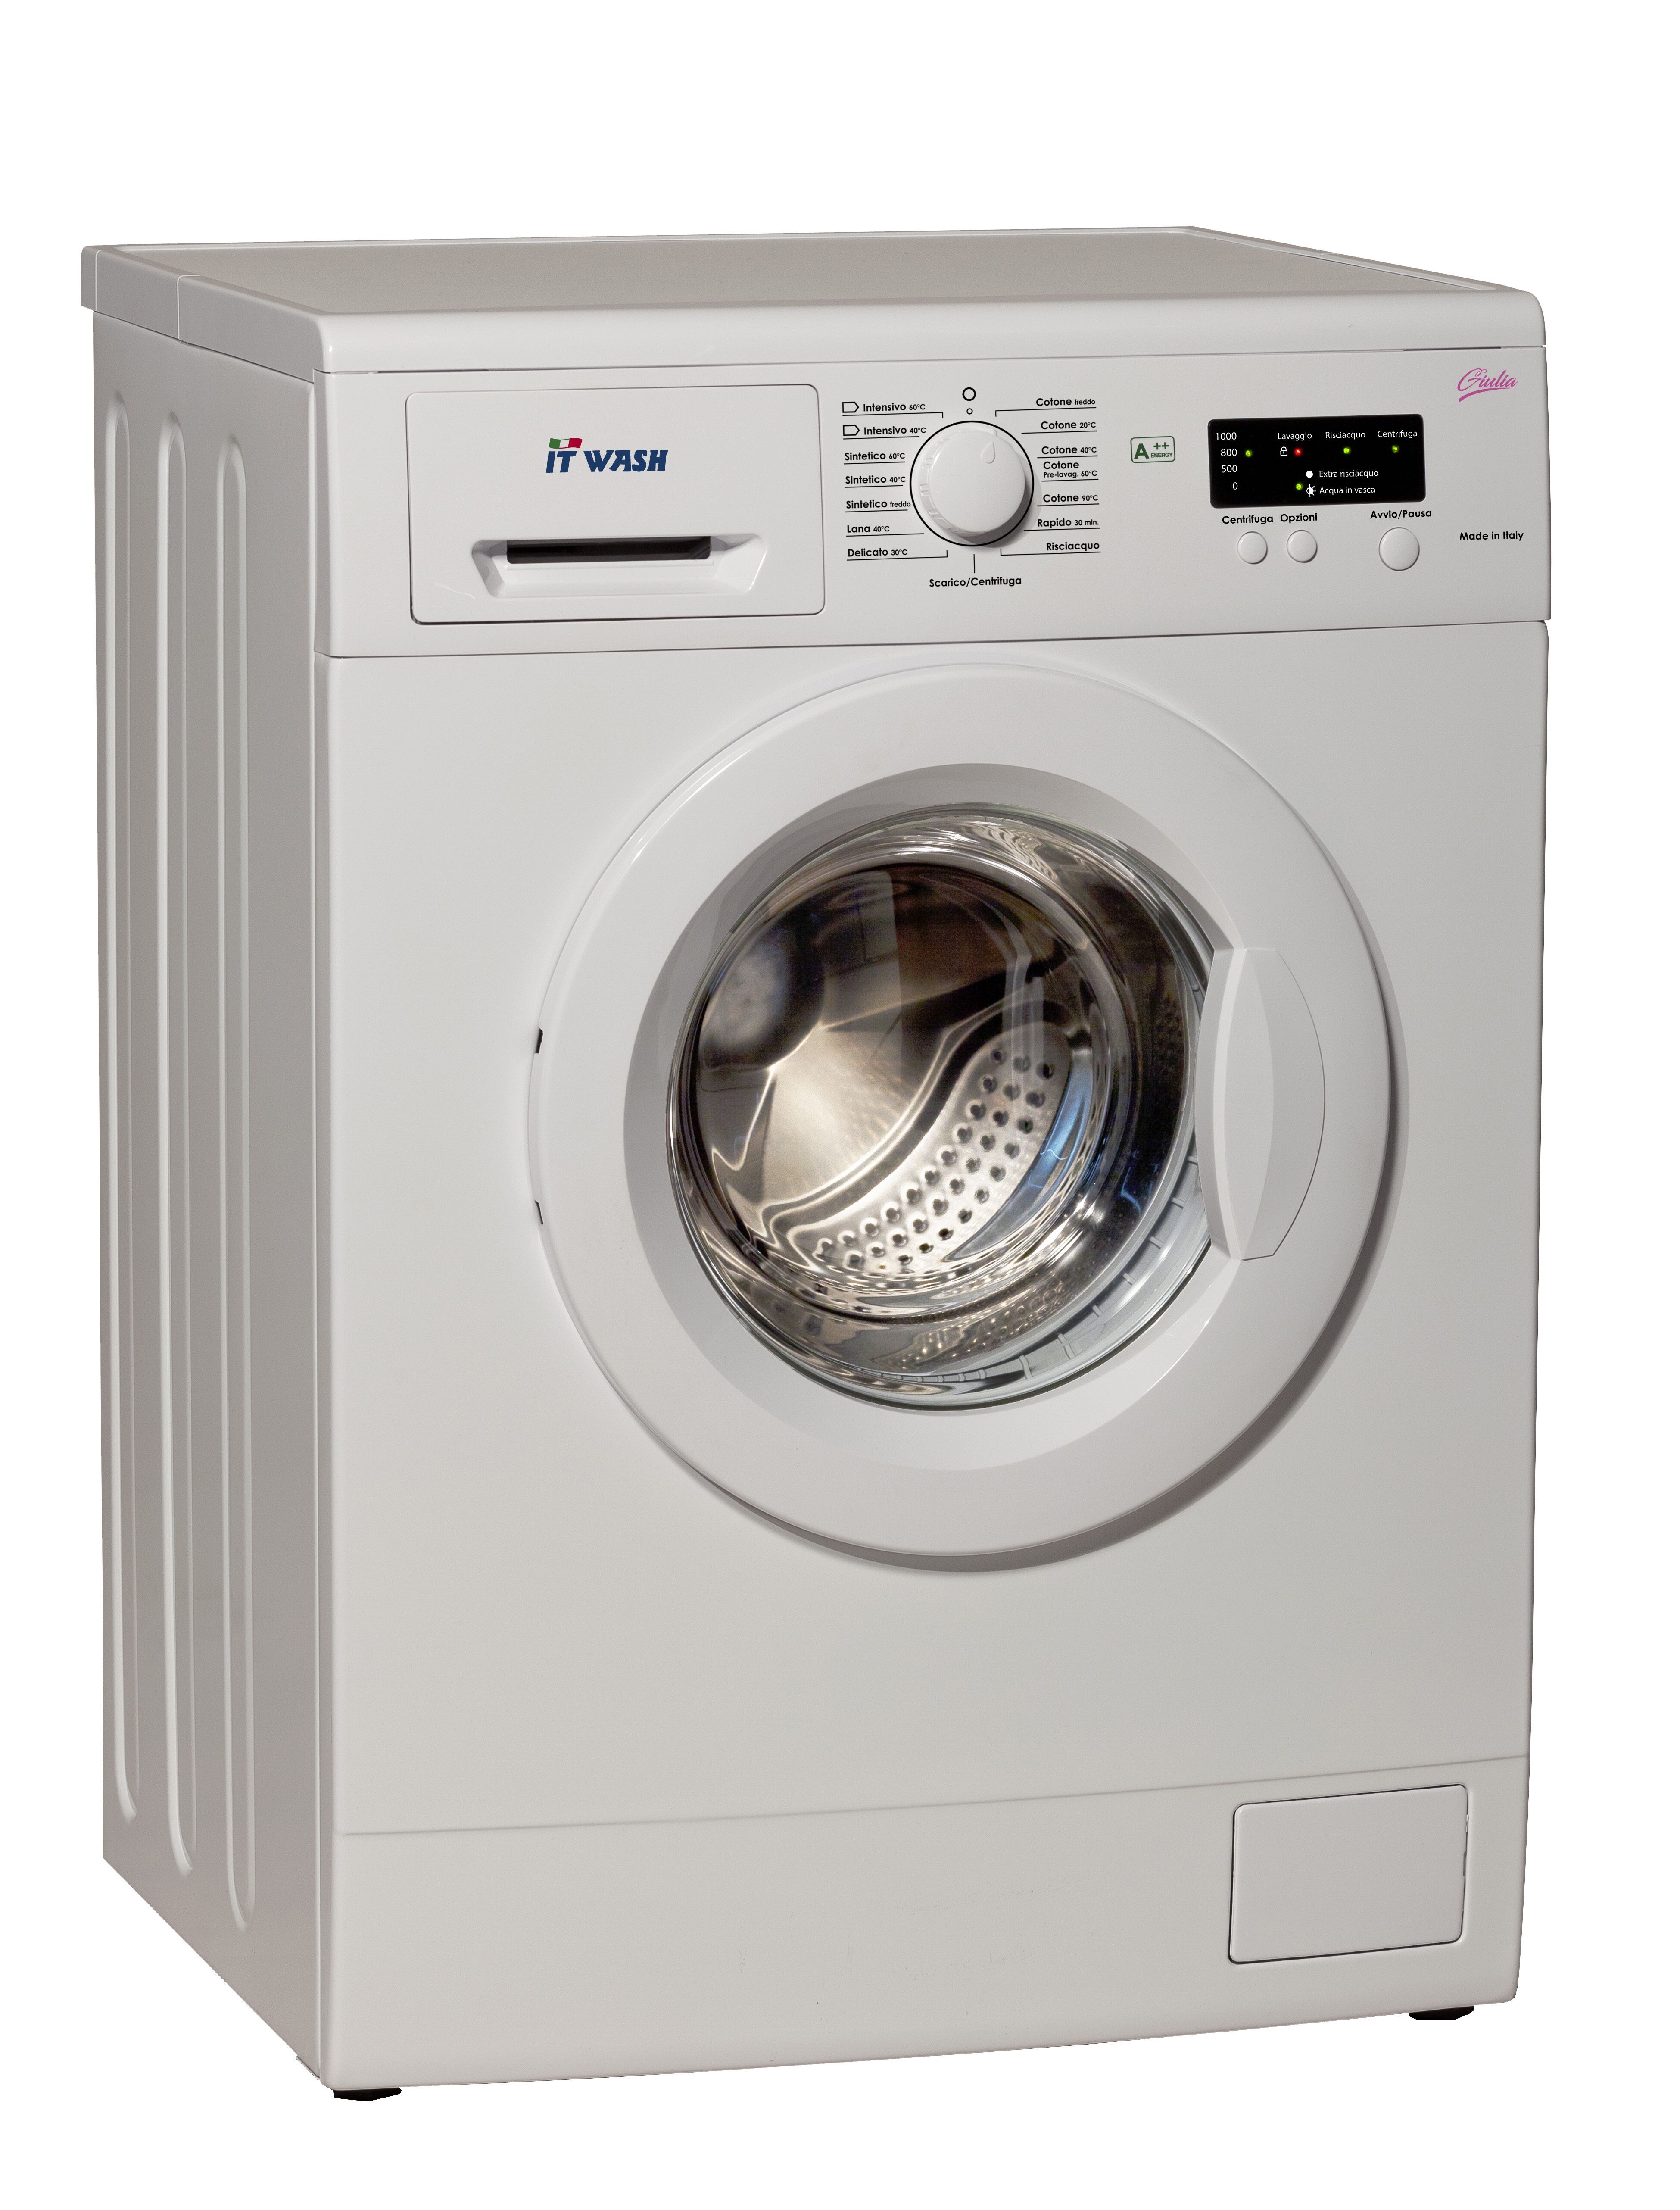 San Giorgio ITWASH G710 lavatrice Caricamento frontale 7 kg 1000 Giri/min D Bianco